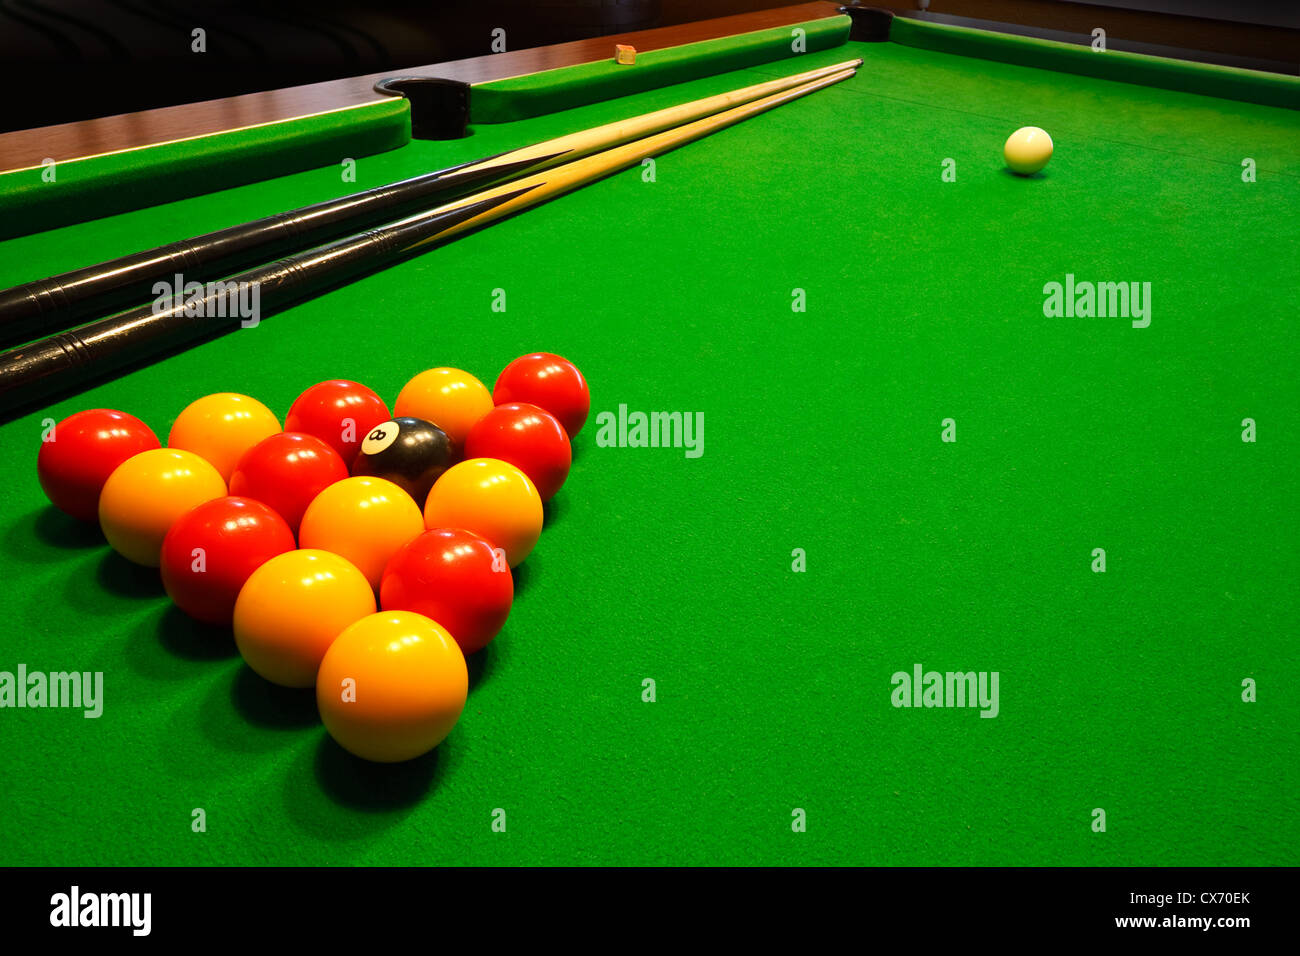 Un tissu vert ou billard table de billard avec la ligue anglaise boules  rouge et jaune Photo Stock - Alamy